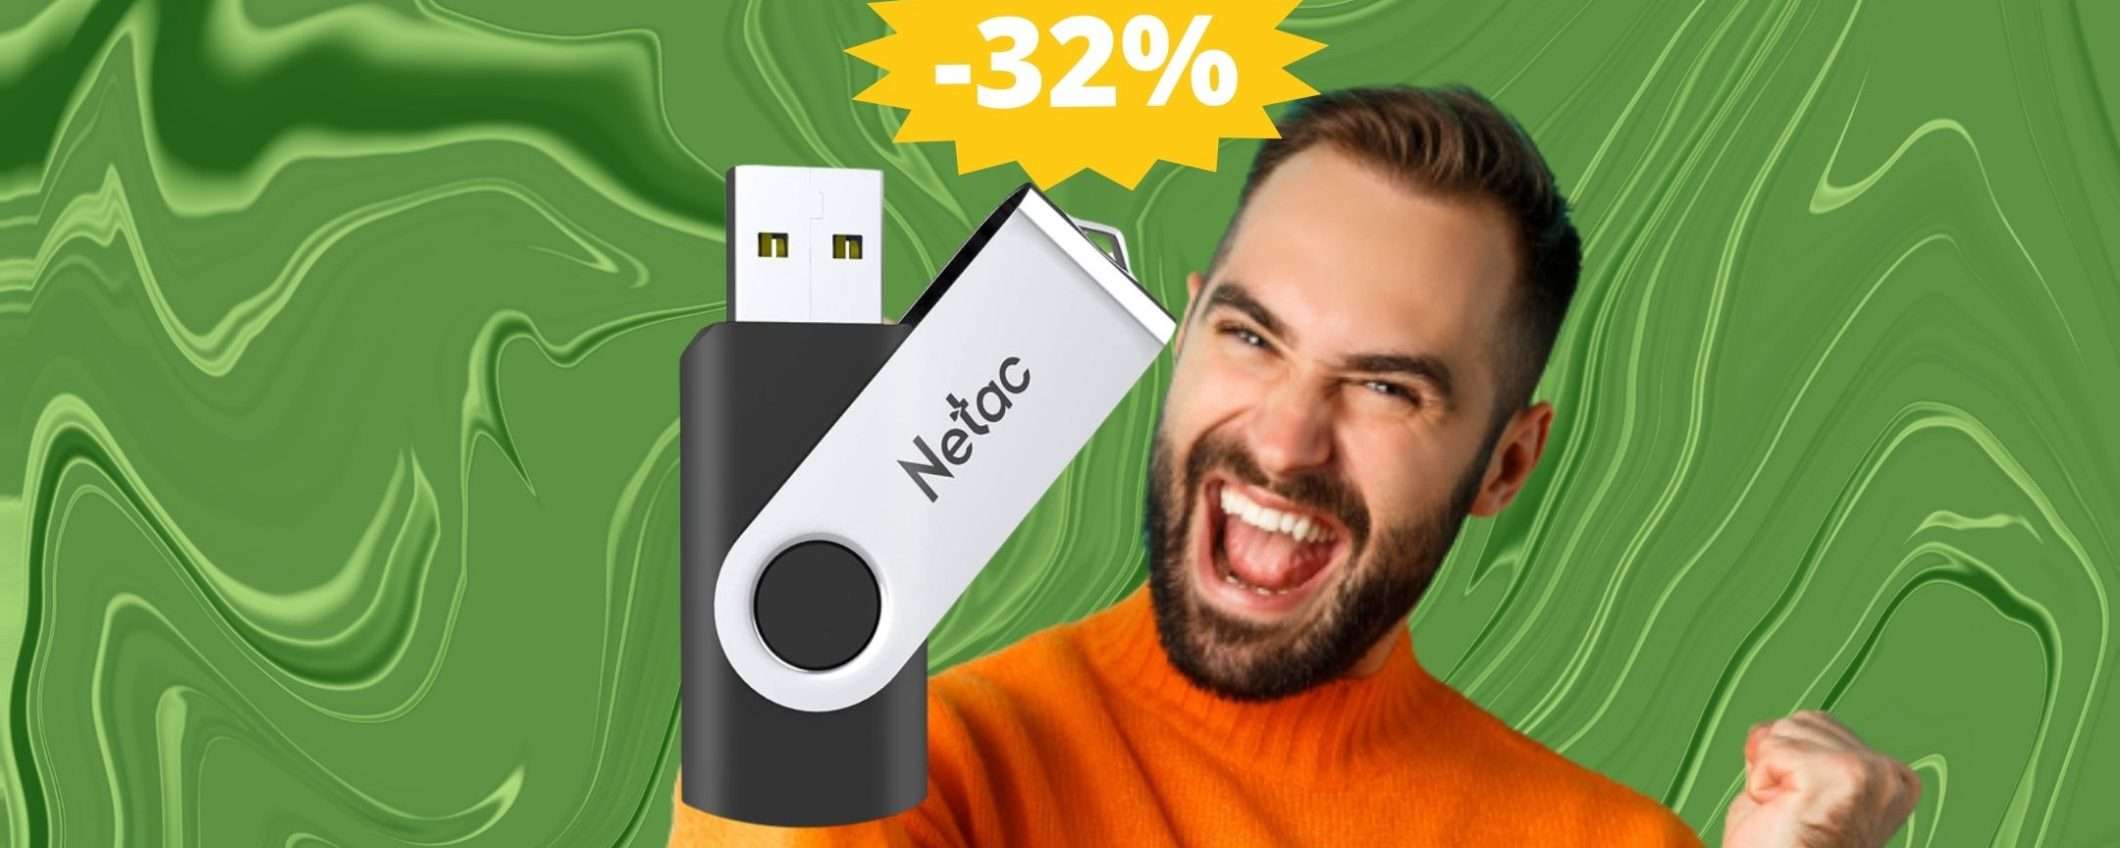 Chiavetta USB da 256GB: l'AFFARE che stavi cercando (-32%)